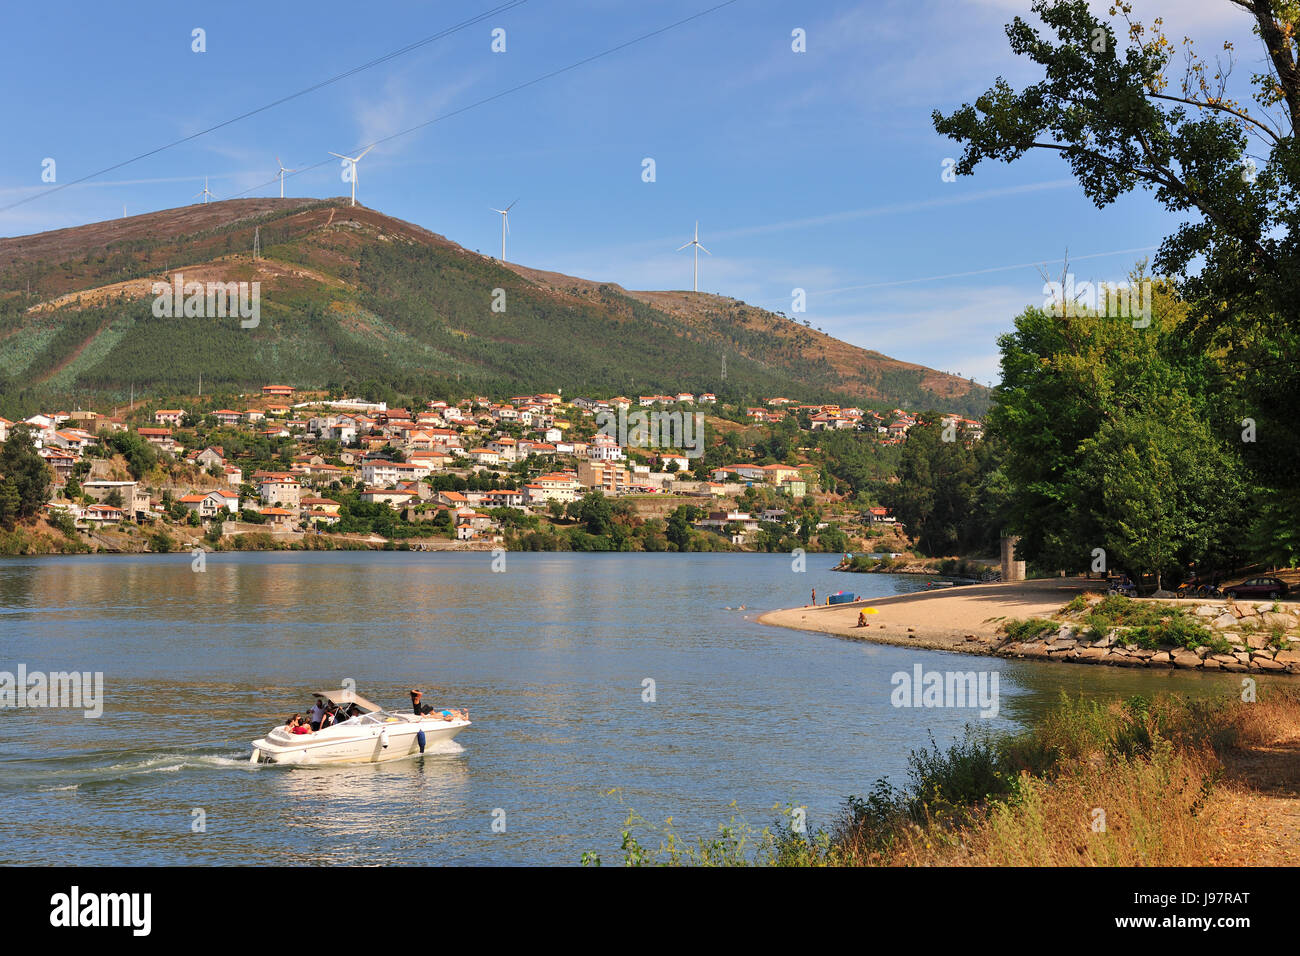 The Douro river at Pedorido. Portugal Stock Photo